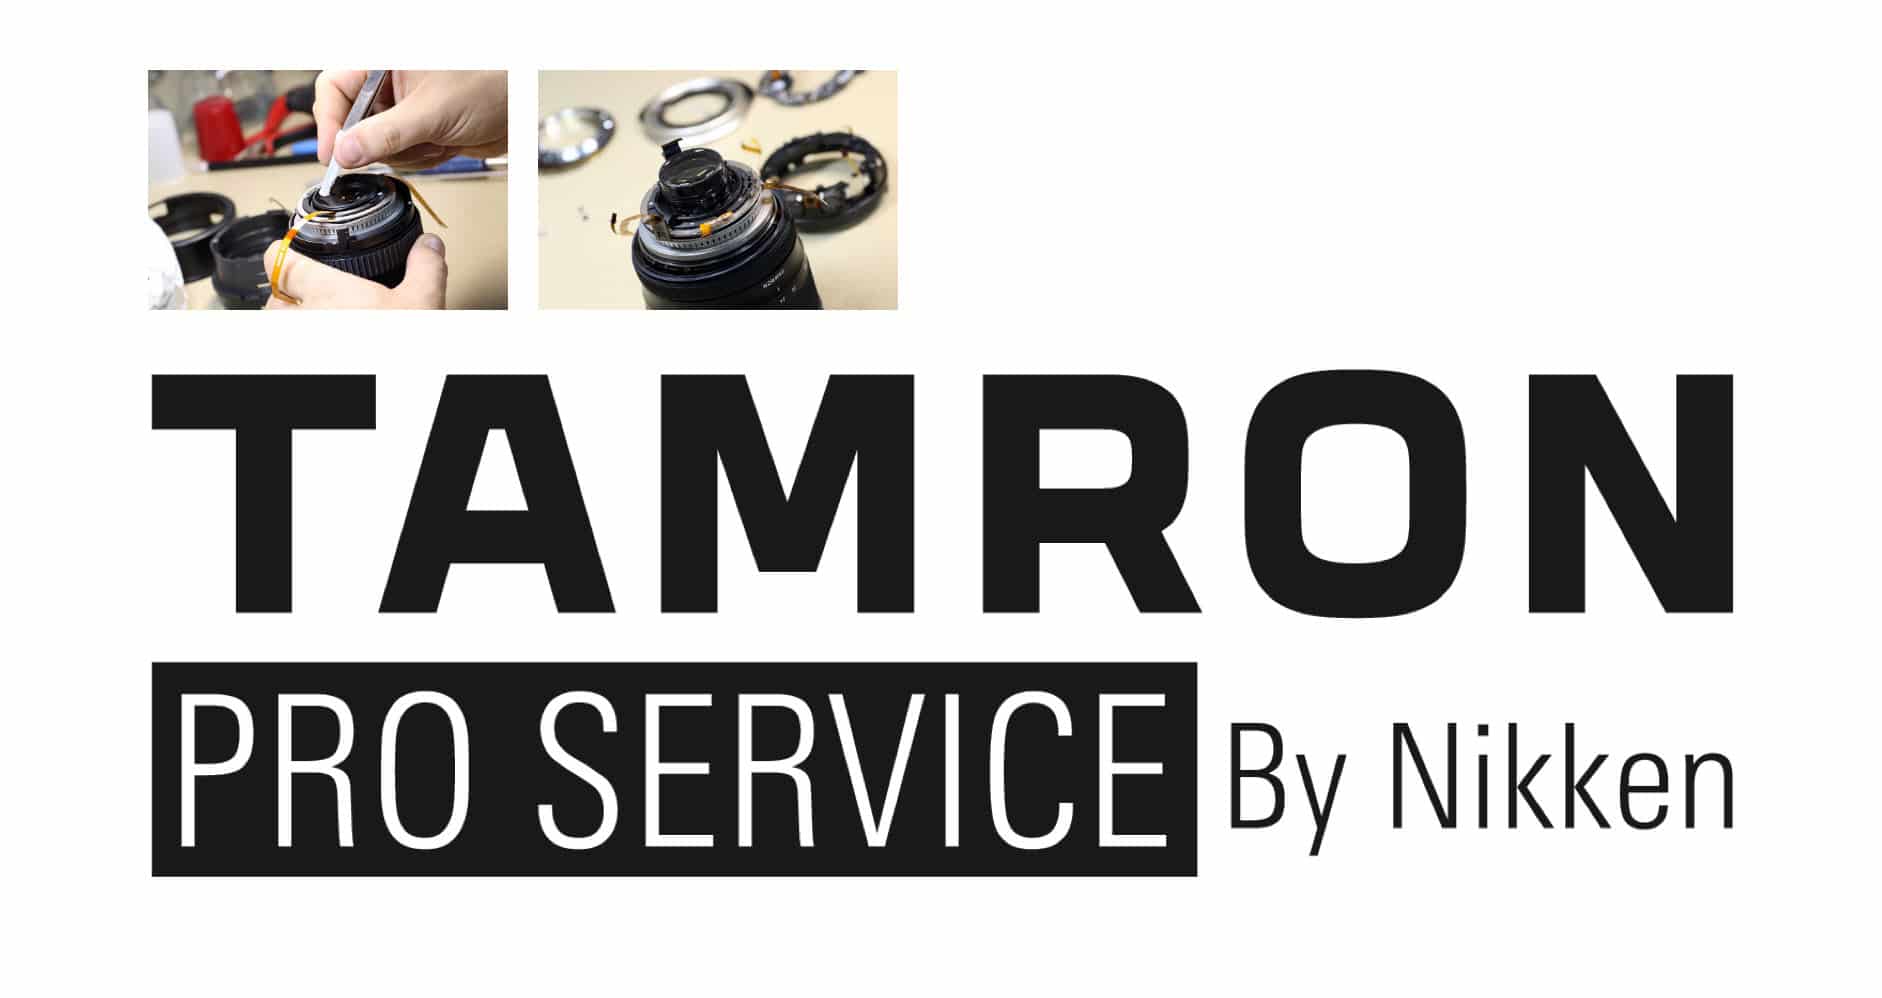 Tamron Pro Service : réparation sous 24h ou prêt d'un objectif de remplacement